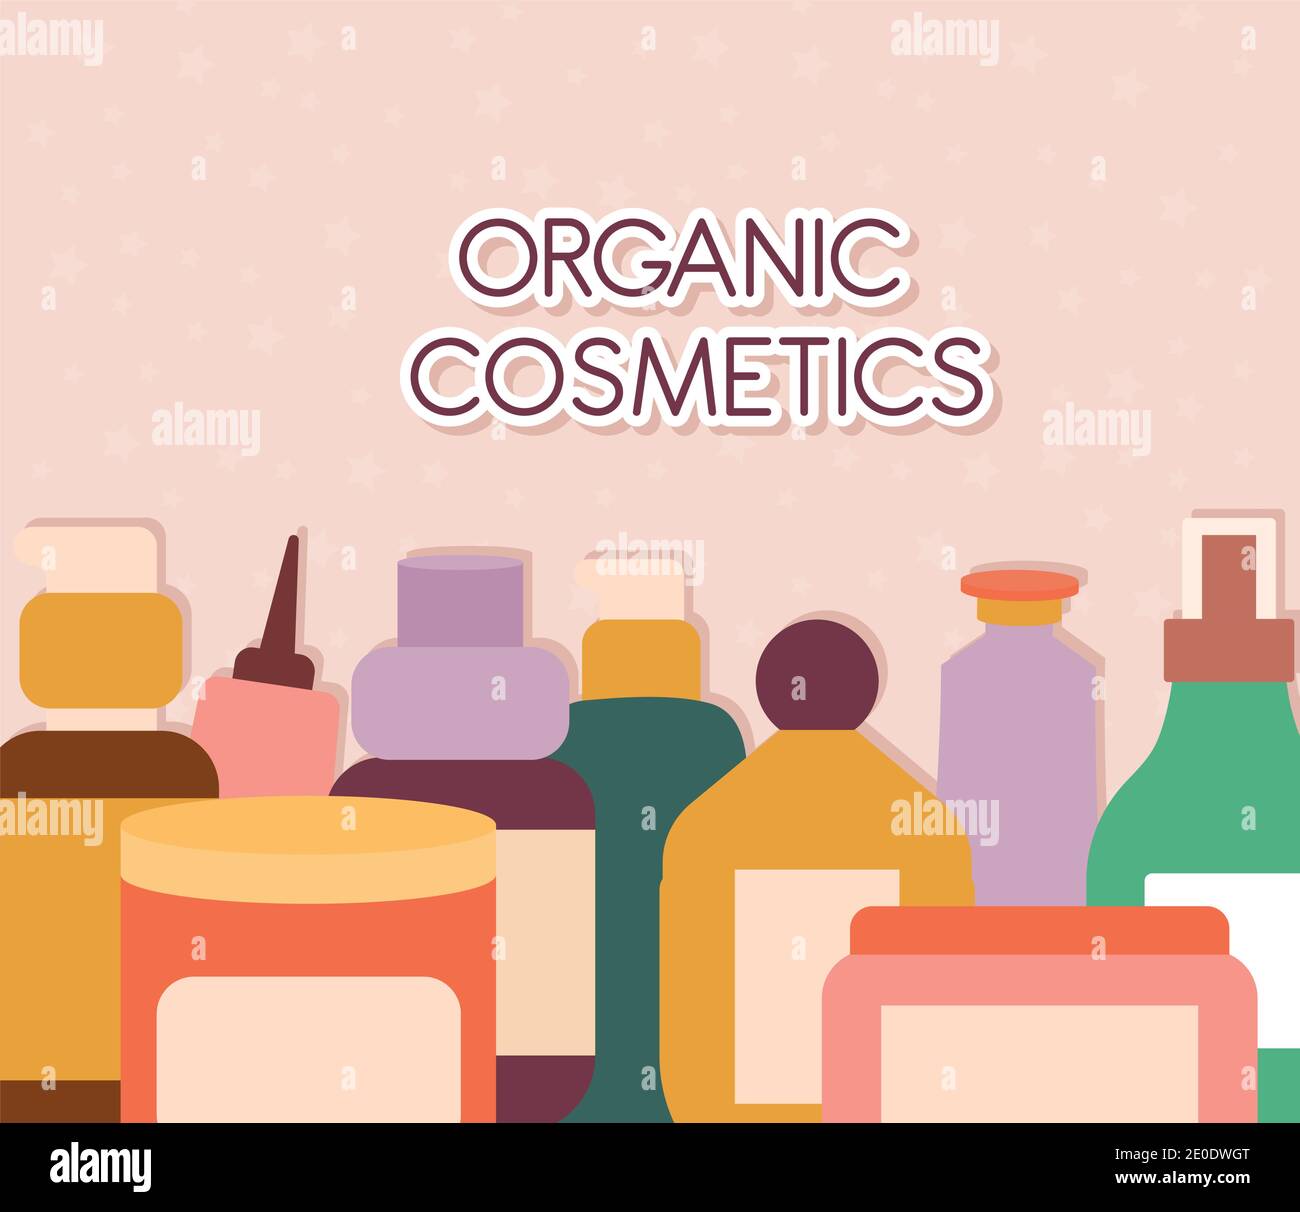 lettrage cosmétique biologique avec un ensemble d'icônes cosmétiques biologiques sur fond rose Illustration de Vecteur